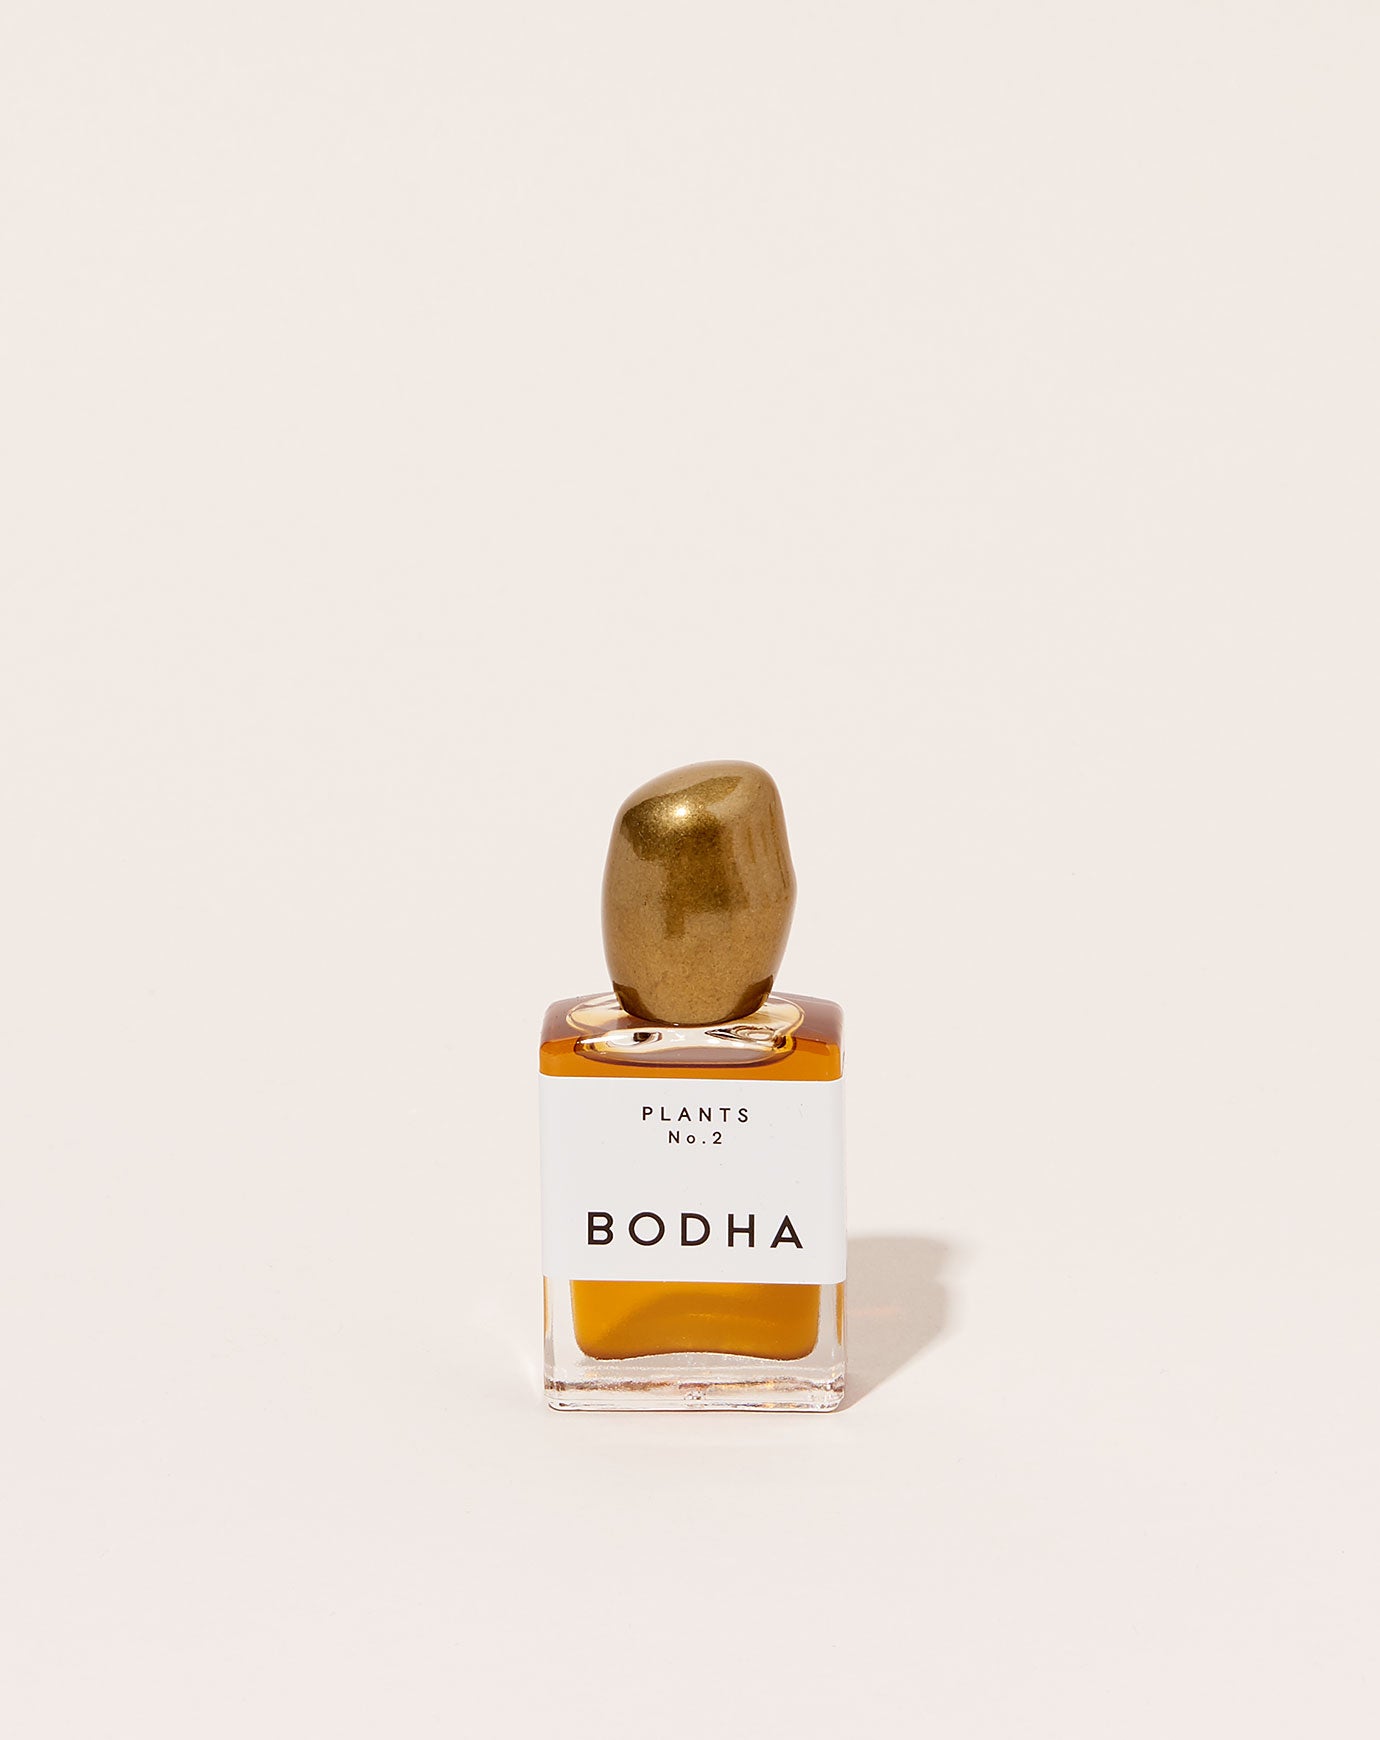 Bodha Plant Vibration Perfume Oil